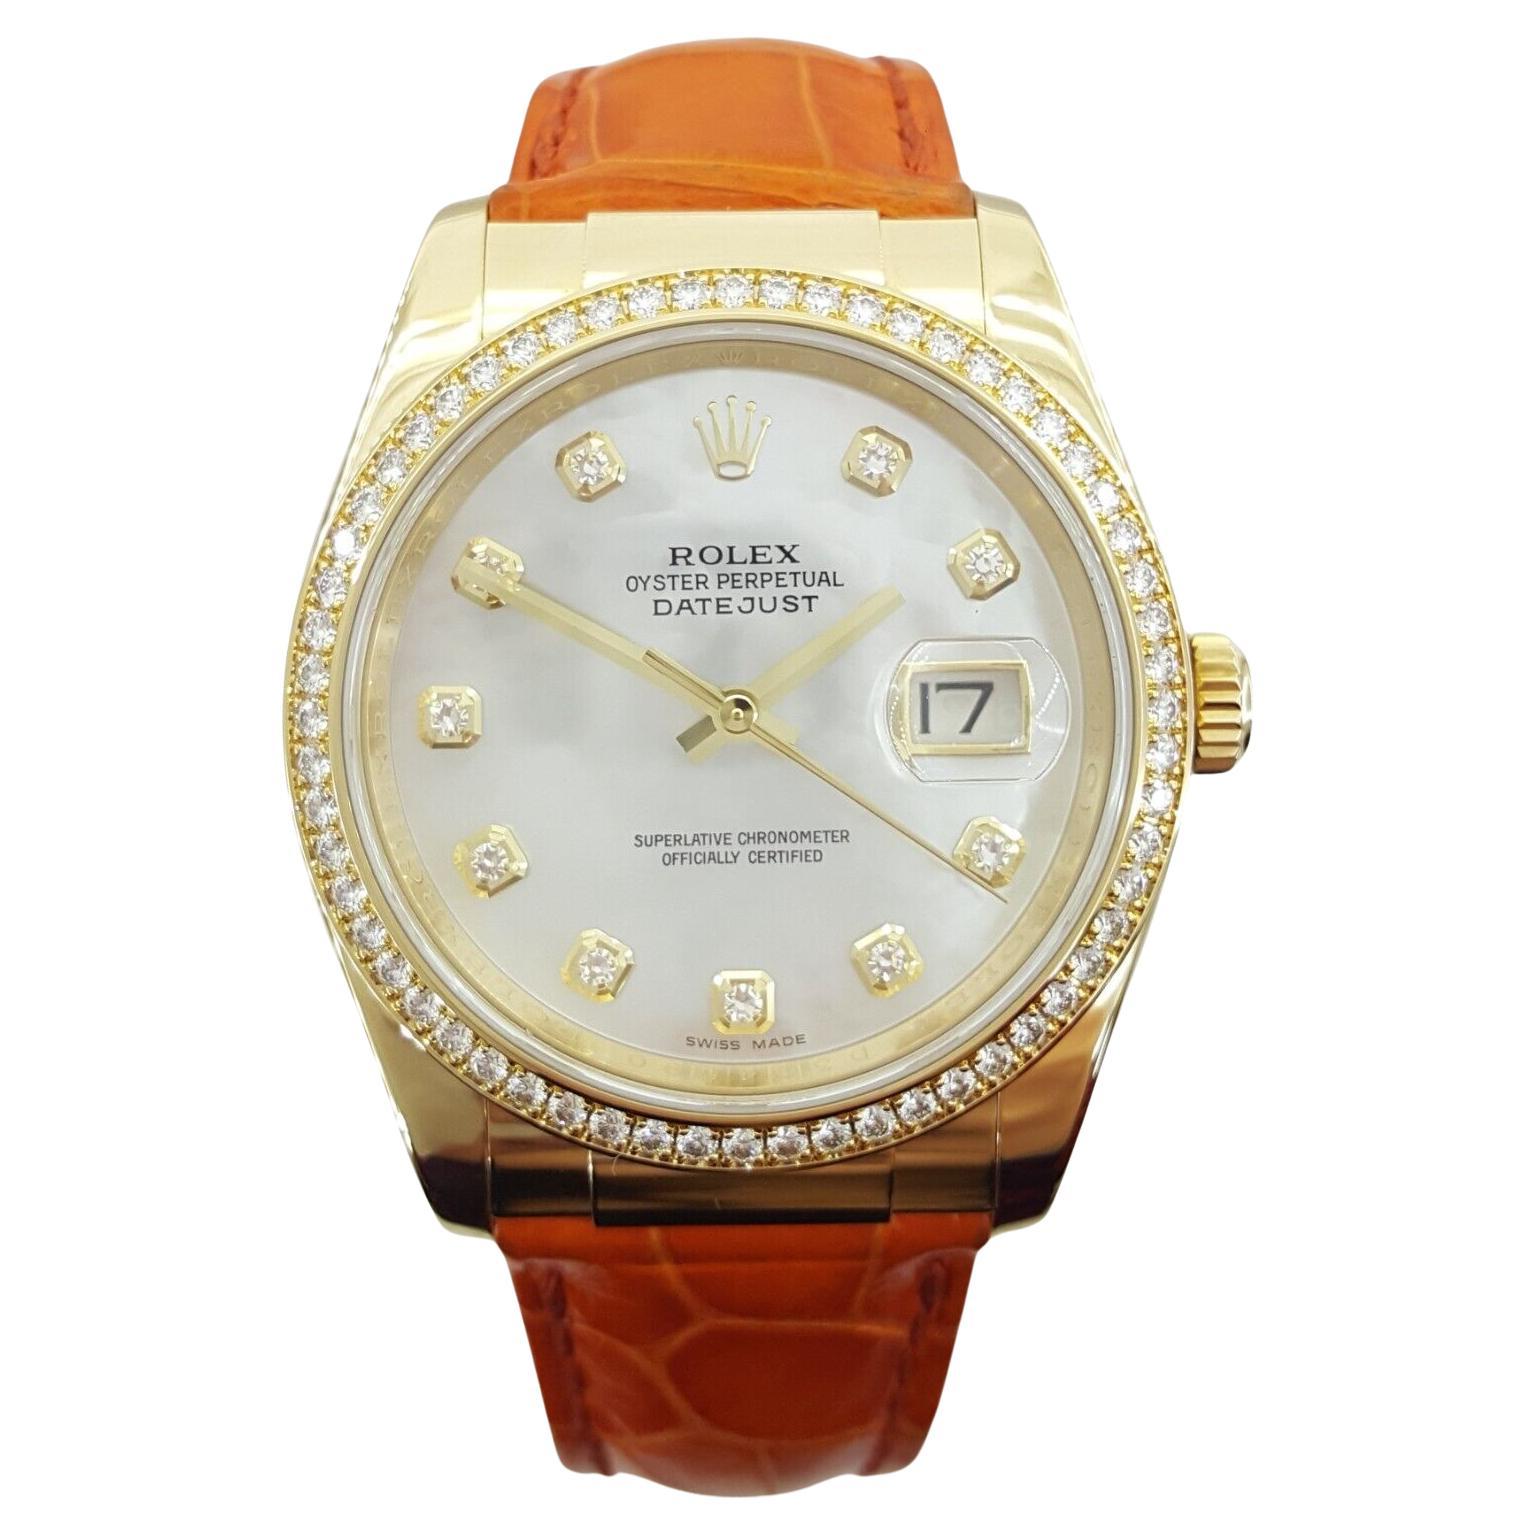 Vous faites l'acquisition d'une authentique Rolex Lady DateJust 116188, un garde-temps de 36 mm réalisé en or jaune 18 carats, doté d'un cadran à diamants en nacre d'usine et d'une lunette à diamants d'usine.

Cette montre est une véritable